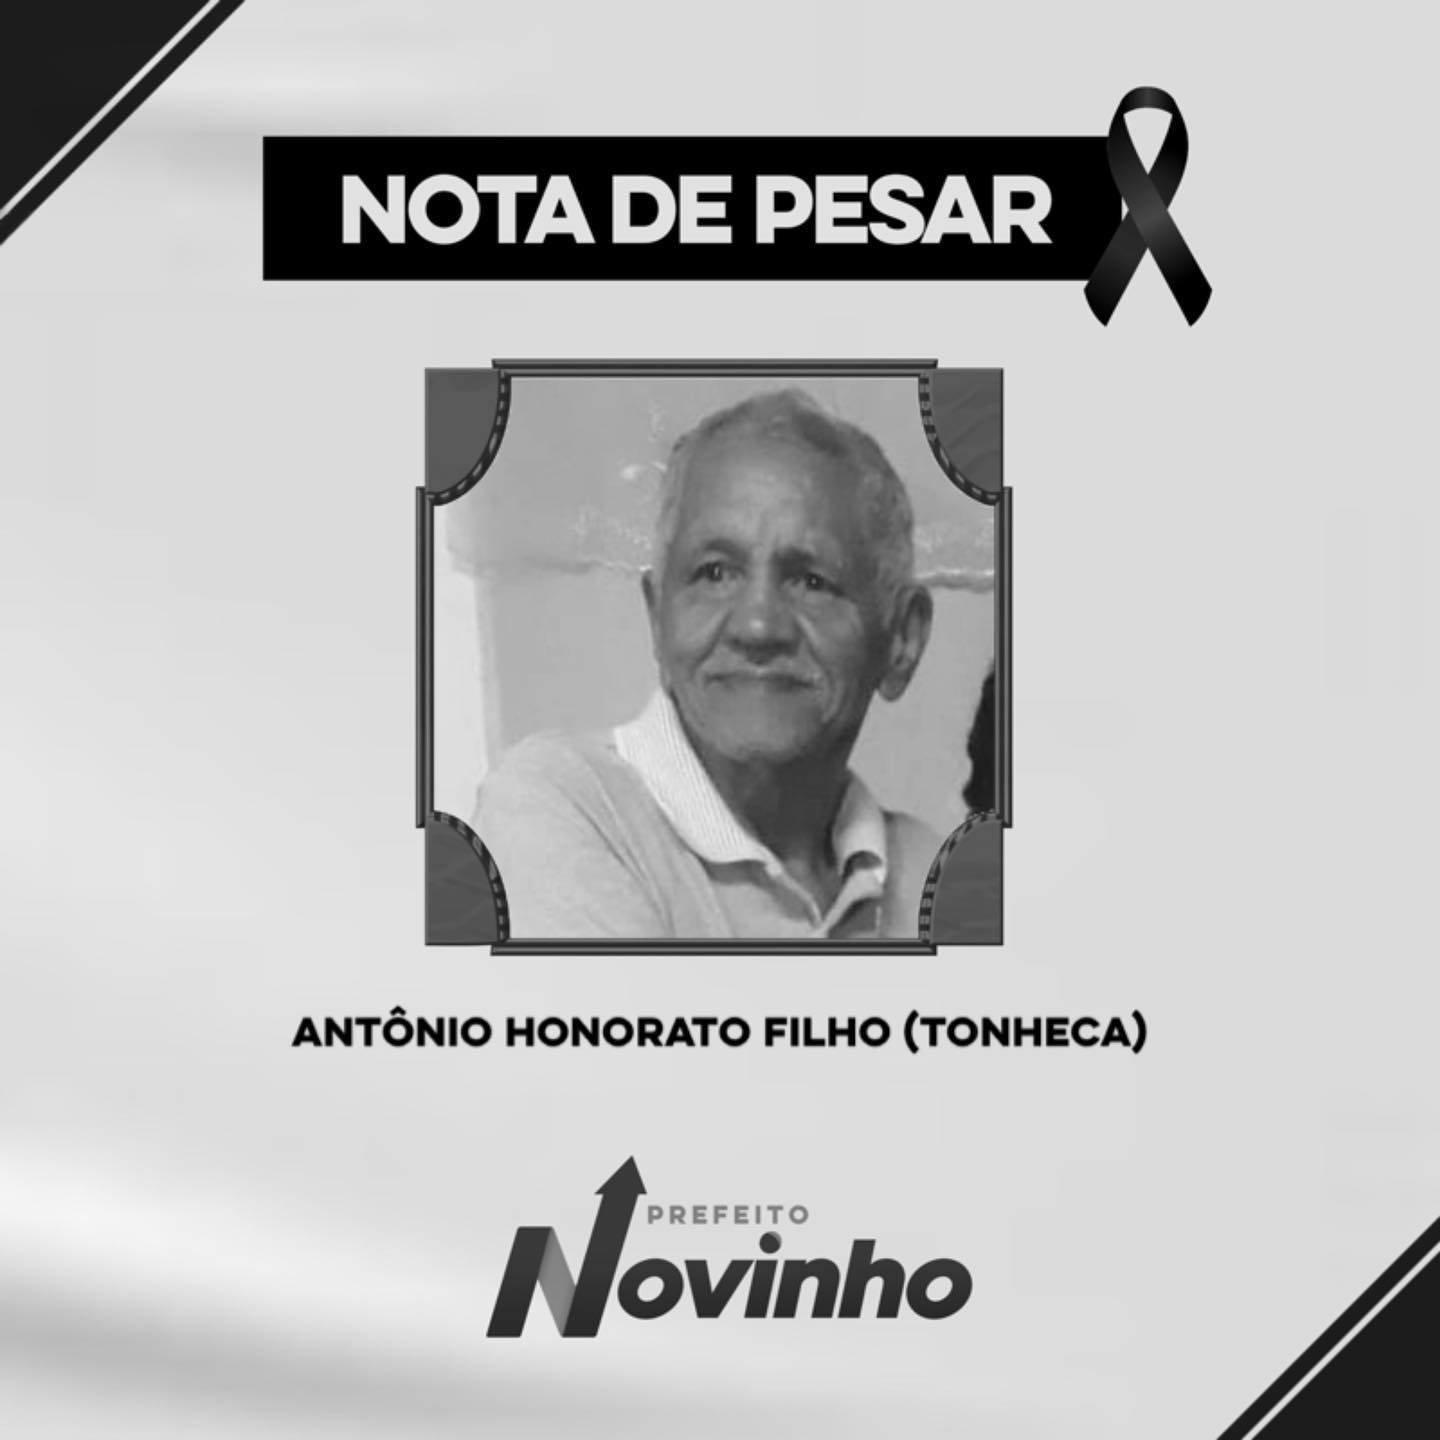 NOTA DE PESAR PELO FALECIMENTO ANTONIO HONORATO FILHO (TONHECA)